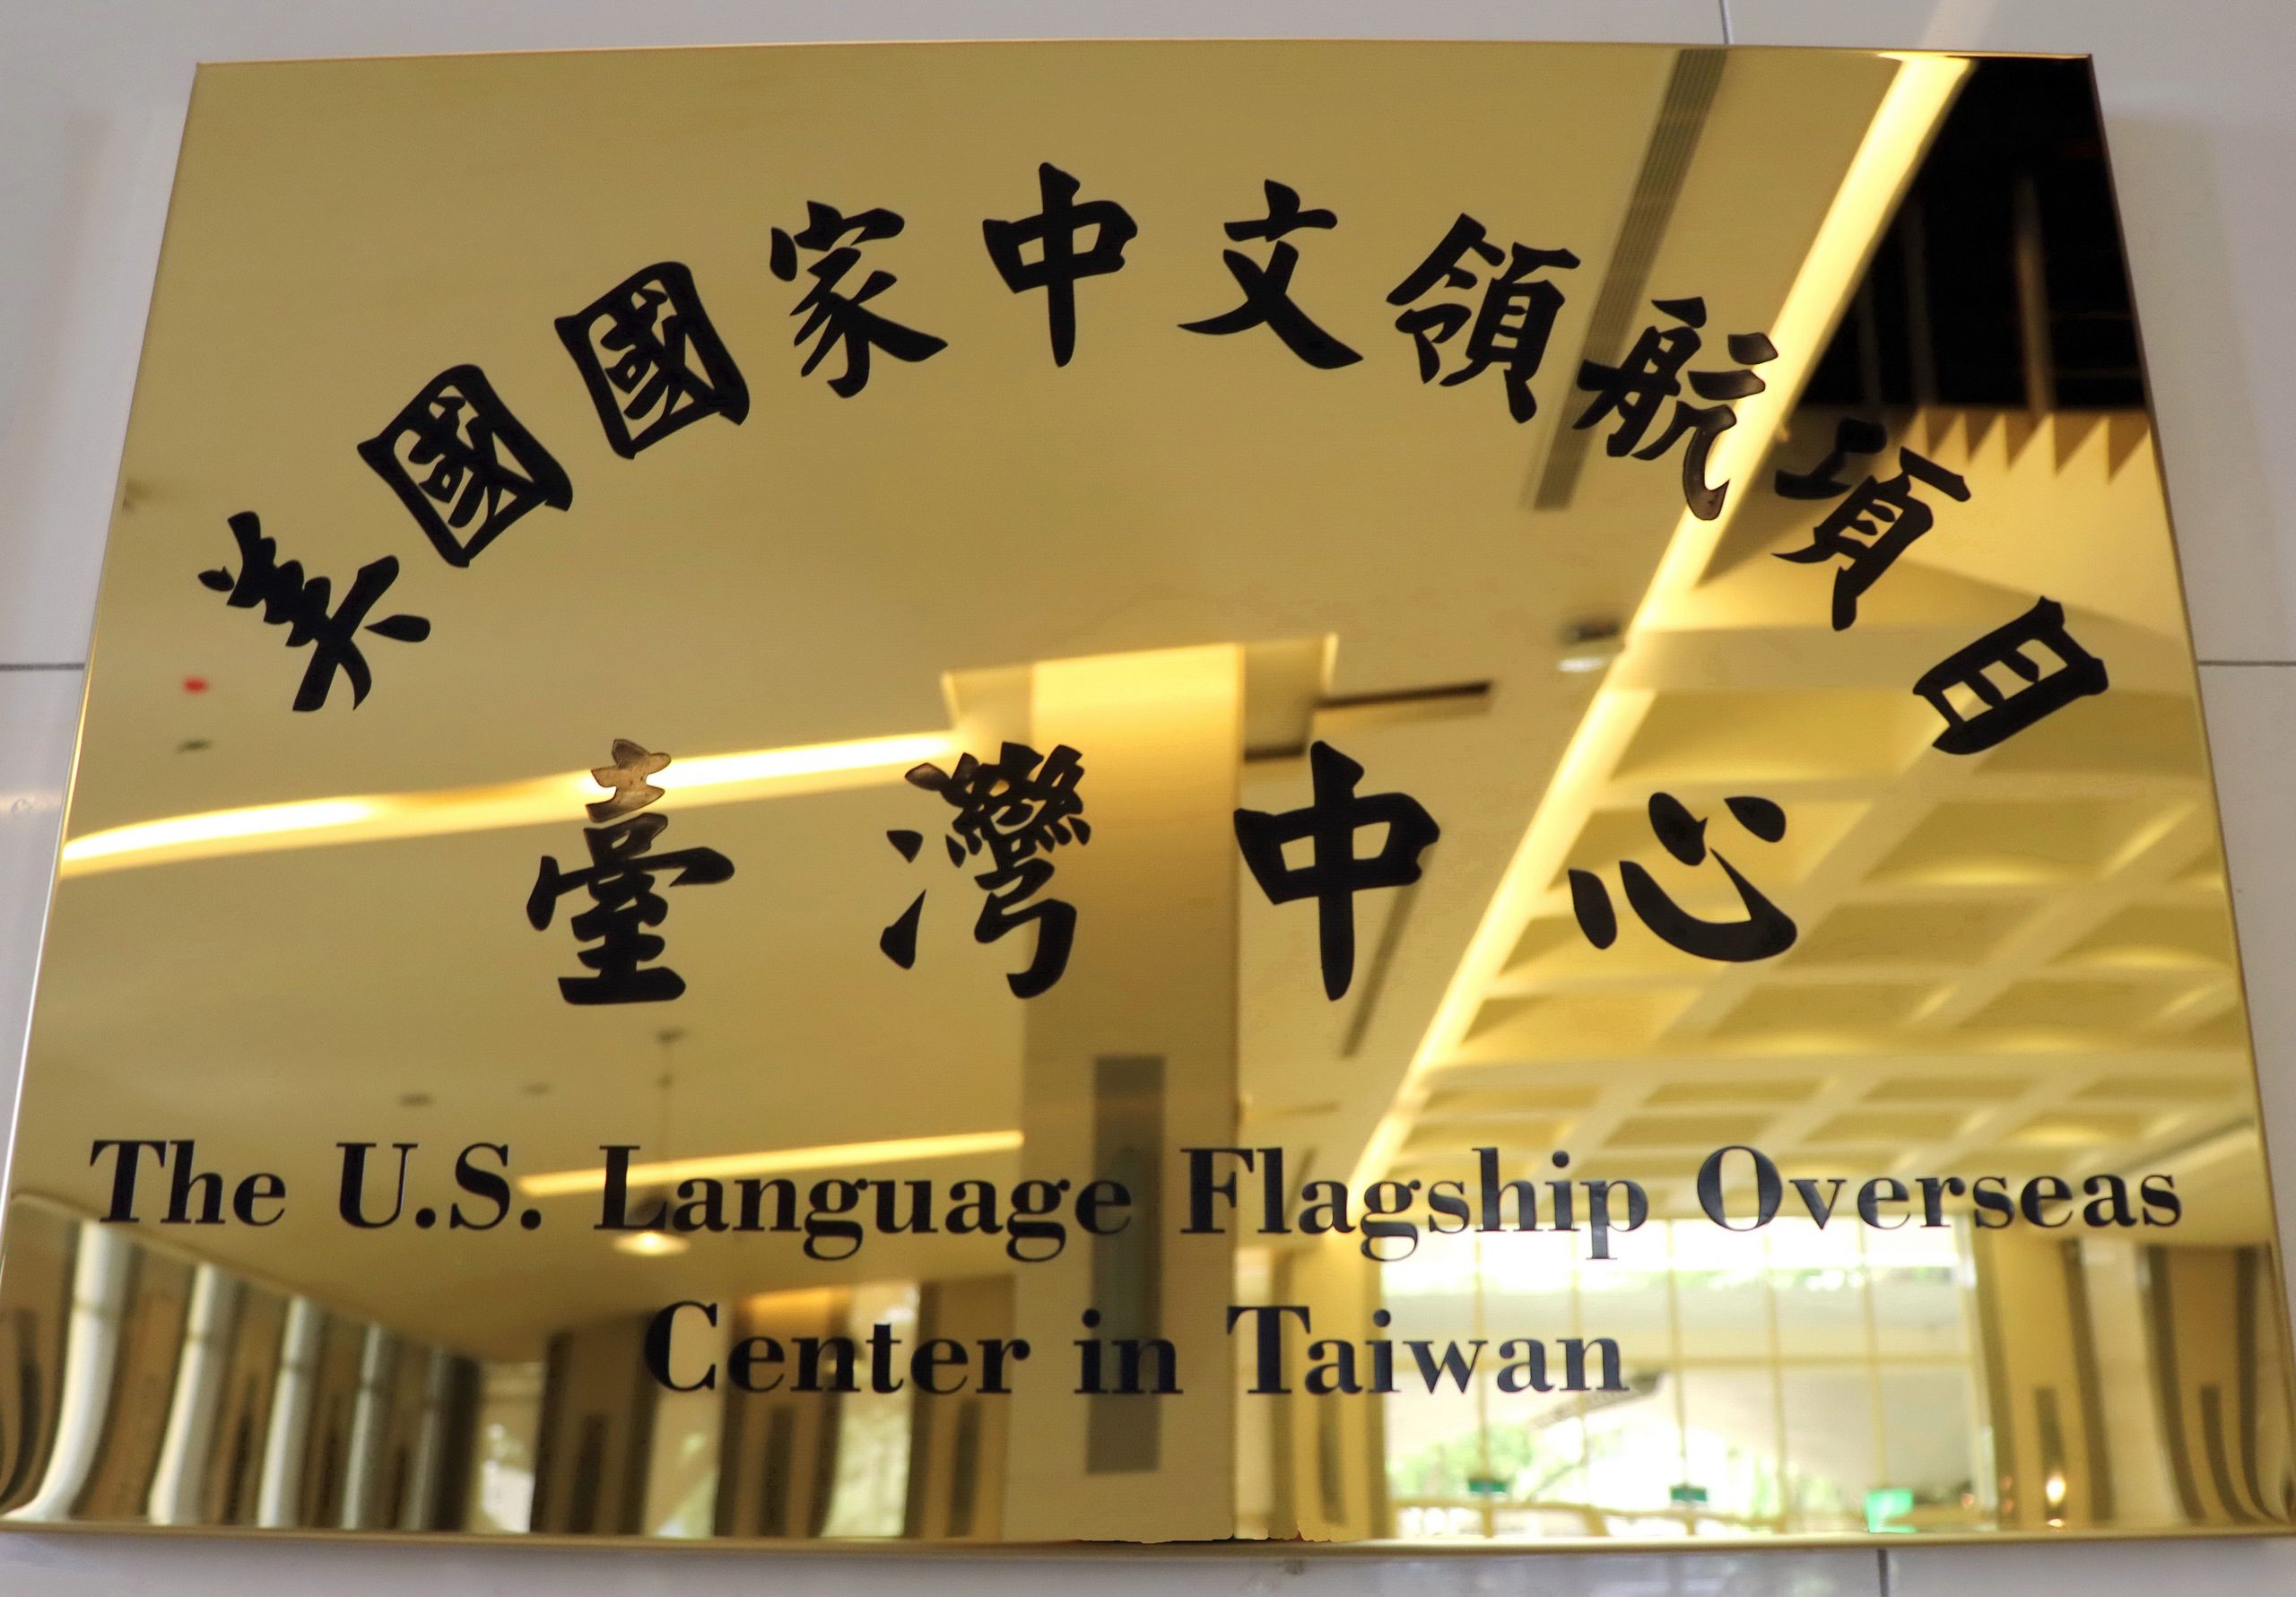 「美國國家中文領航項目台灣中心」6月1日舉行揭牌儀式